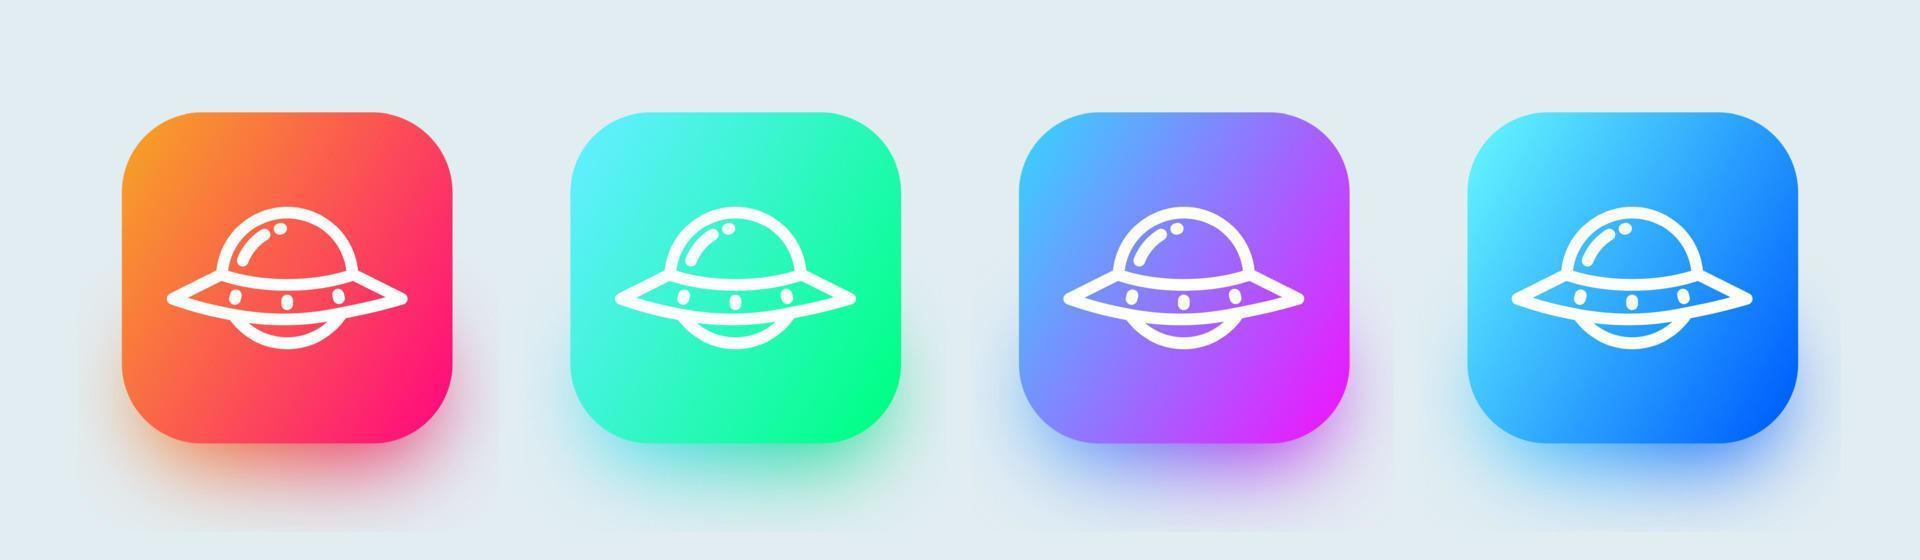 icône de ligne d'ovni dans des couleurs dégradées carrées. vaisseau spatial extraterrestre signe illustration vectorielle. vecteur